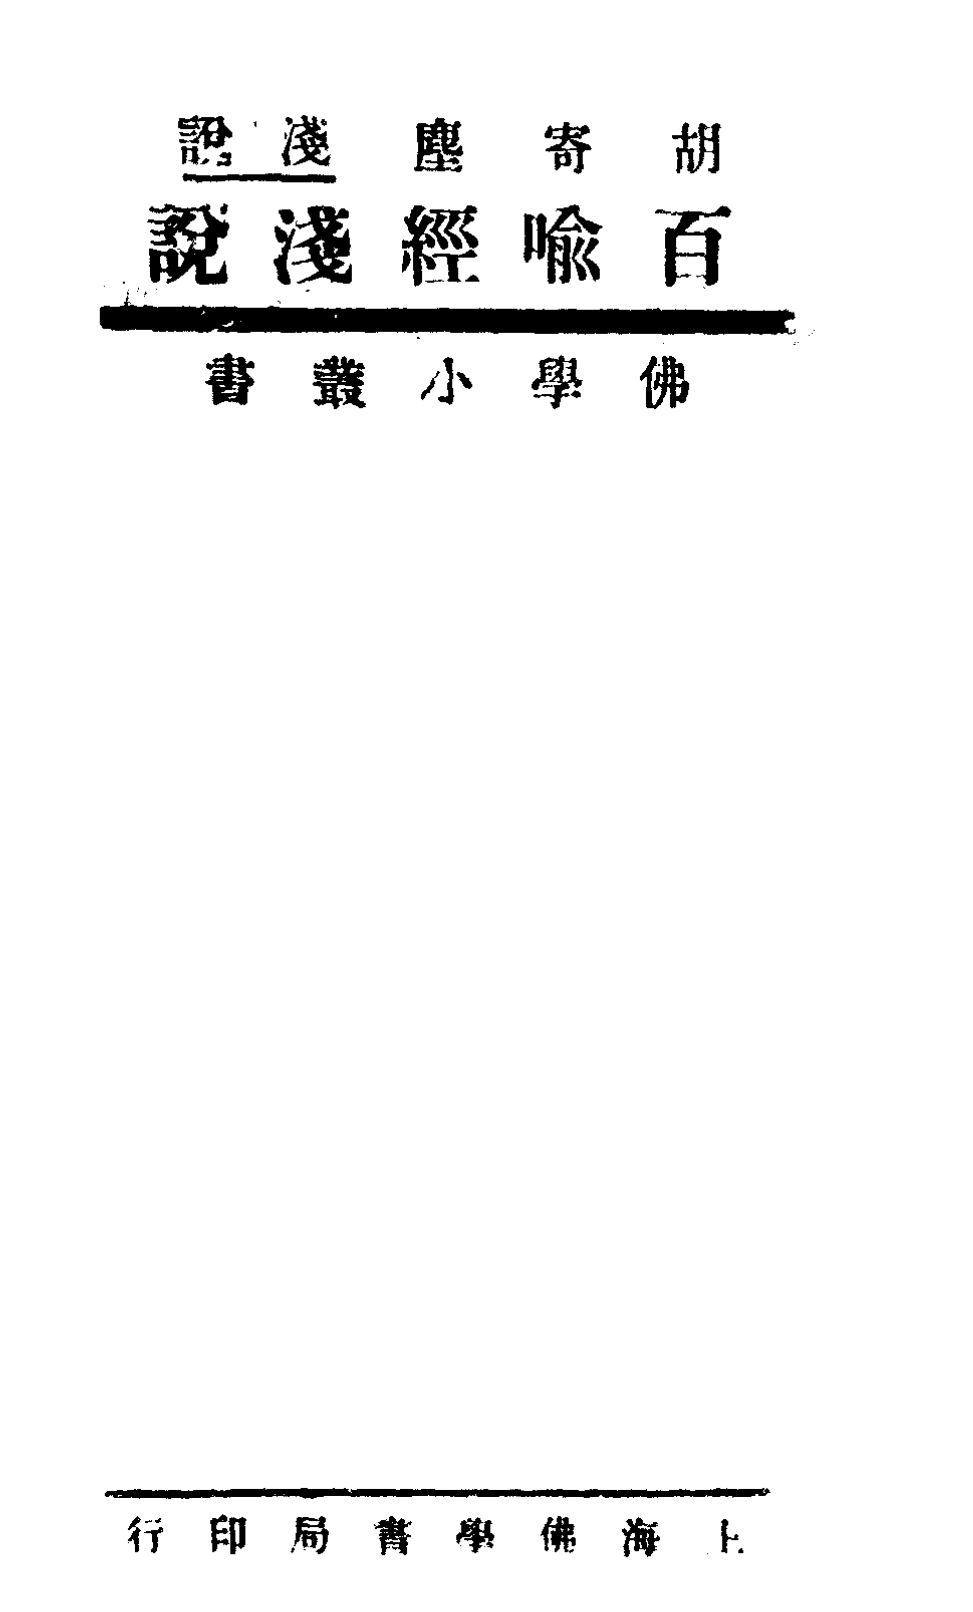 File:Baiyu jing qianshuo 1932.png